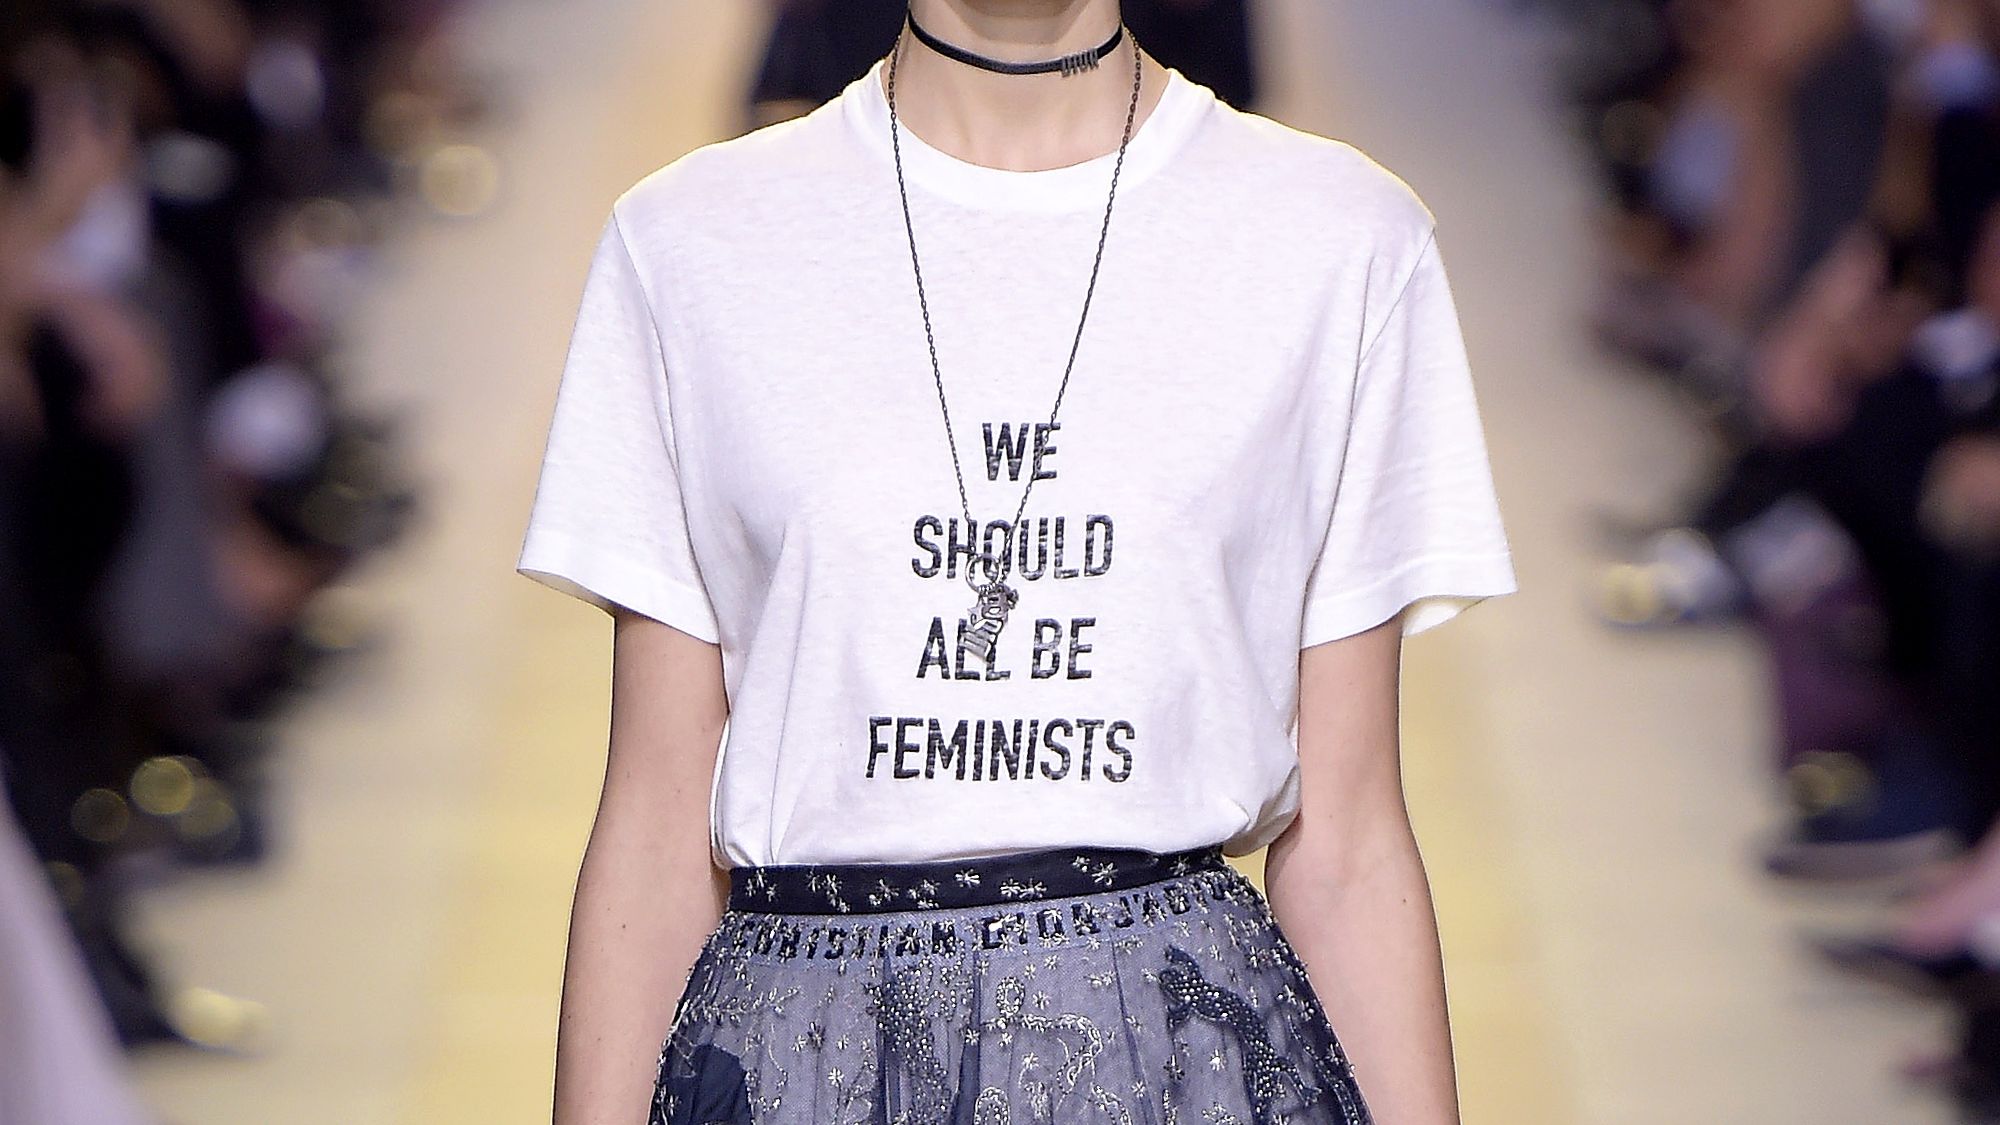 Feminizm według Diora zaczyna się od 3 tysięcy